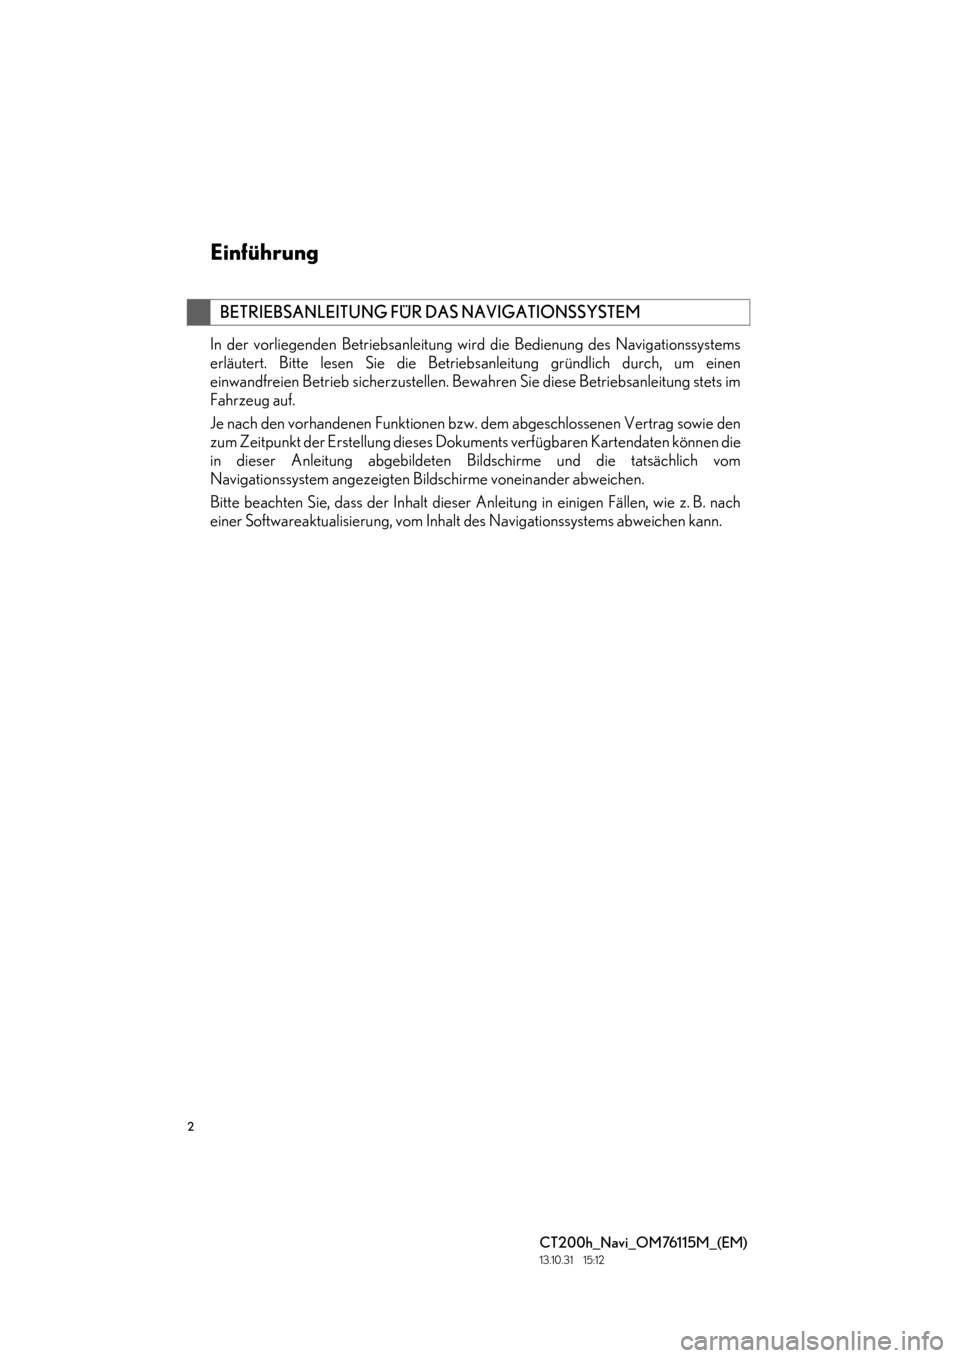 Lexus CT200h 2014  Navigation Handbuch (in German) 2
CT200h_Navi_OM76115M_(EM)
13.10.31     15:12
In der vorliegenden Betriebsanleitung wird die Bedienung des Navigationssystems
erläutert. Bitte lesen Sie die Betriebsanleitung gründlich durch, um ei